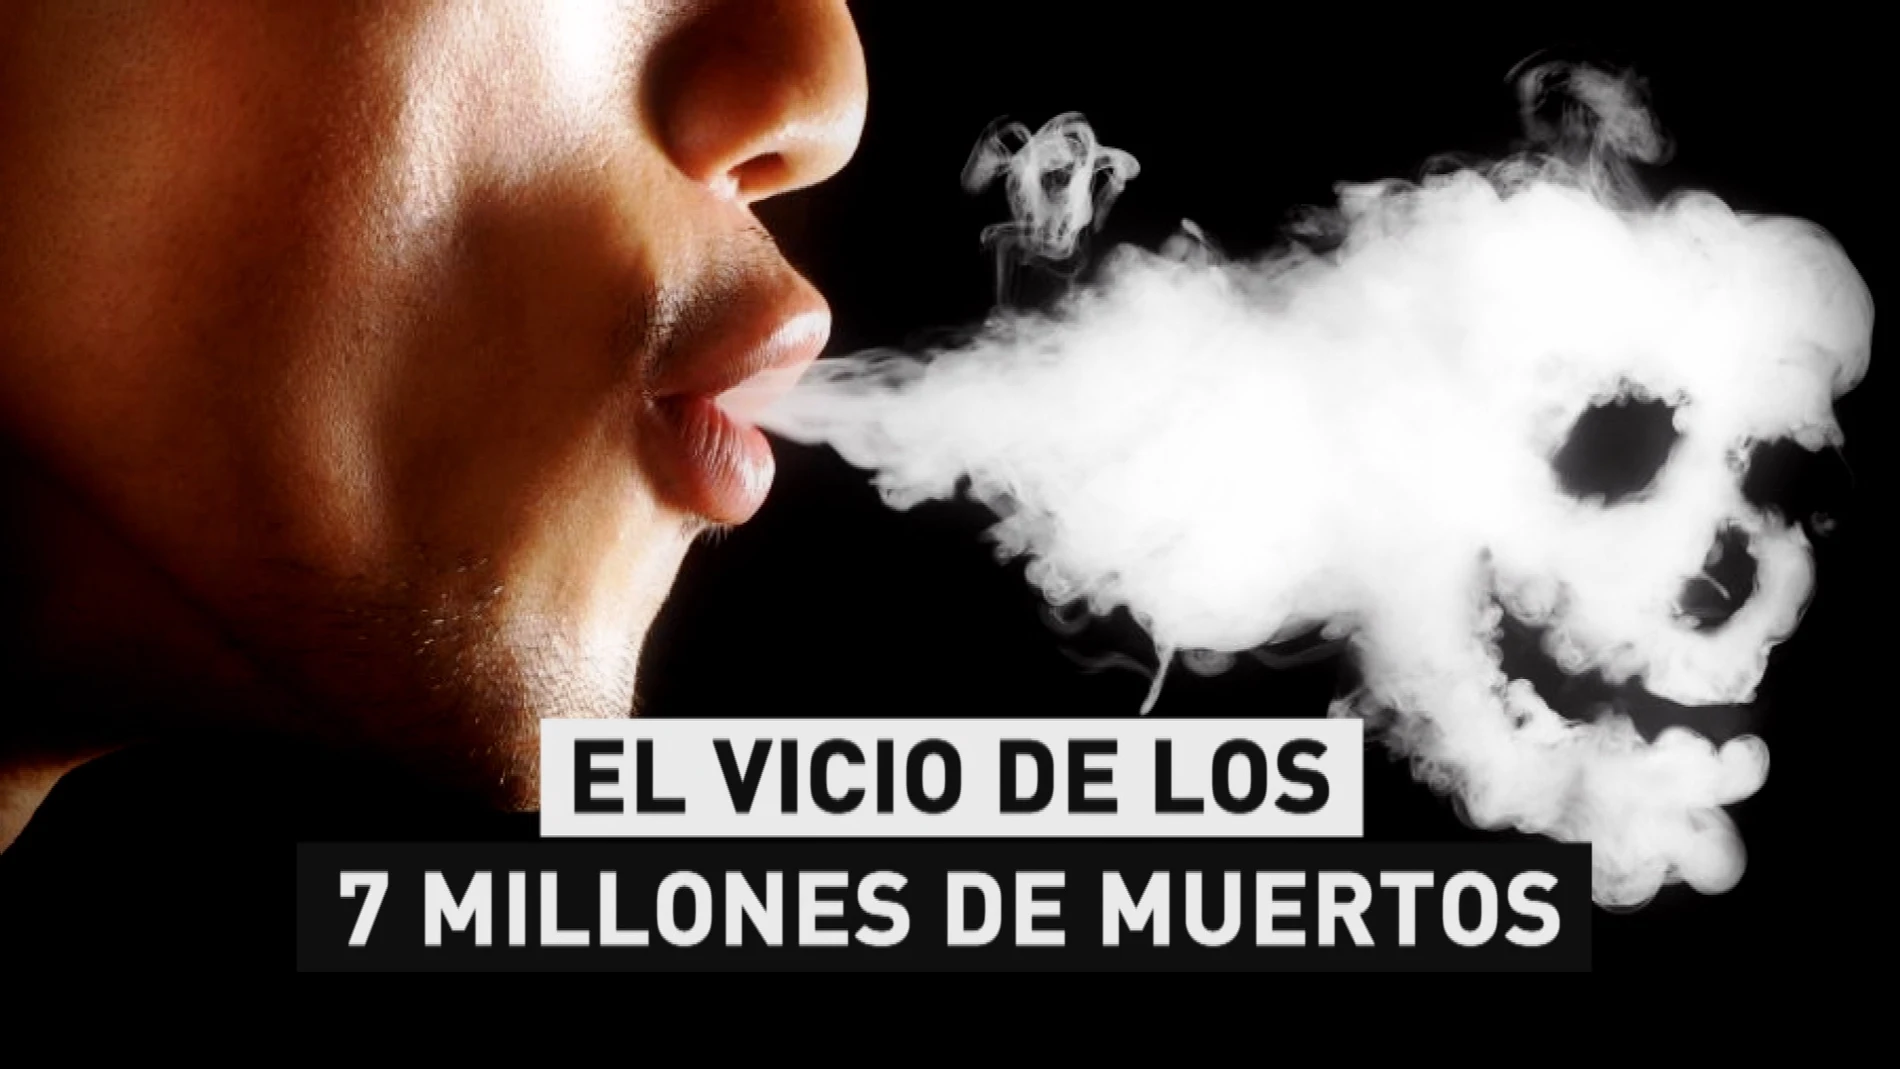 Más de 10 mil personas al día mueren diariamente por el humo de un cigarrillo. 
La hipnosis es un aliado para dejar de fumar